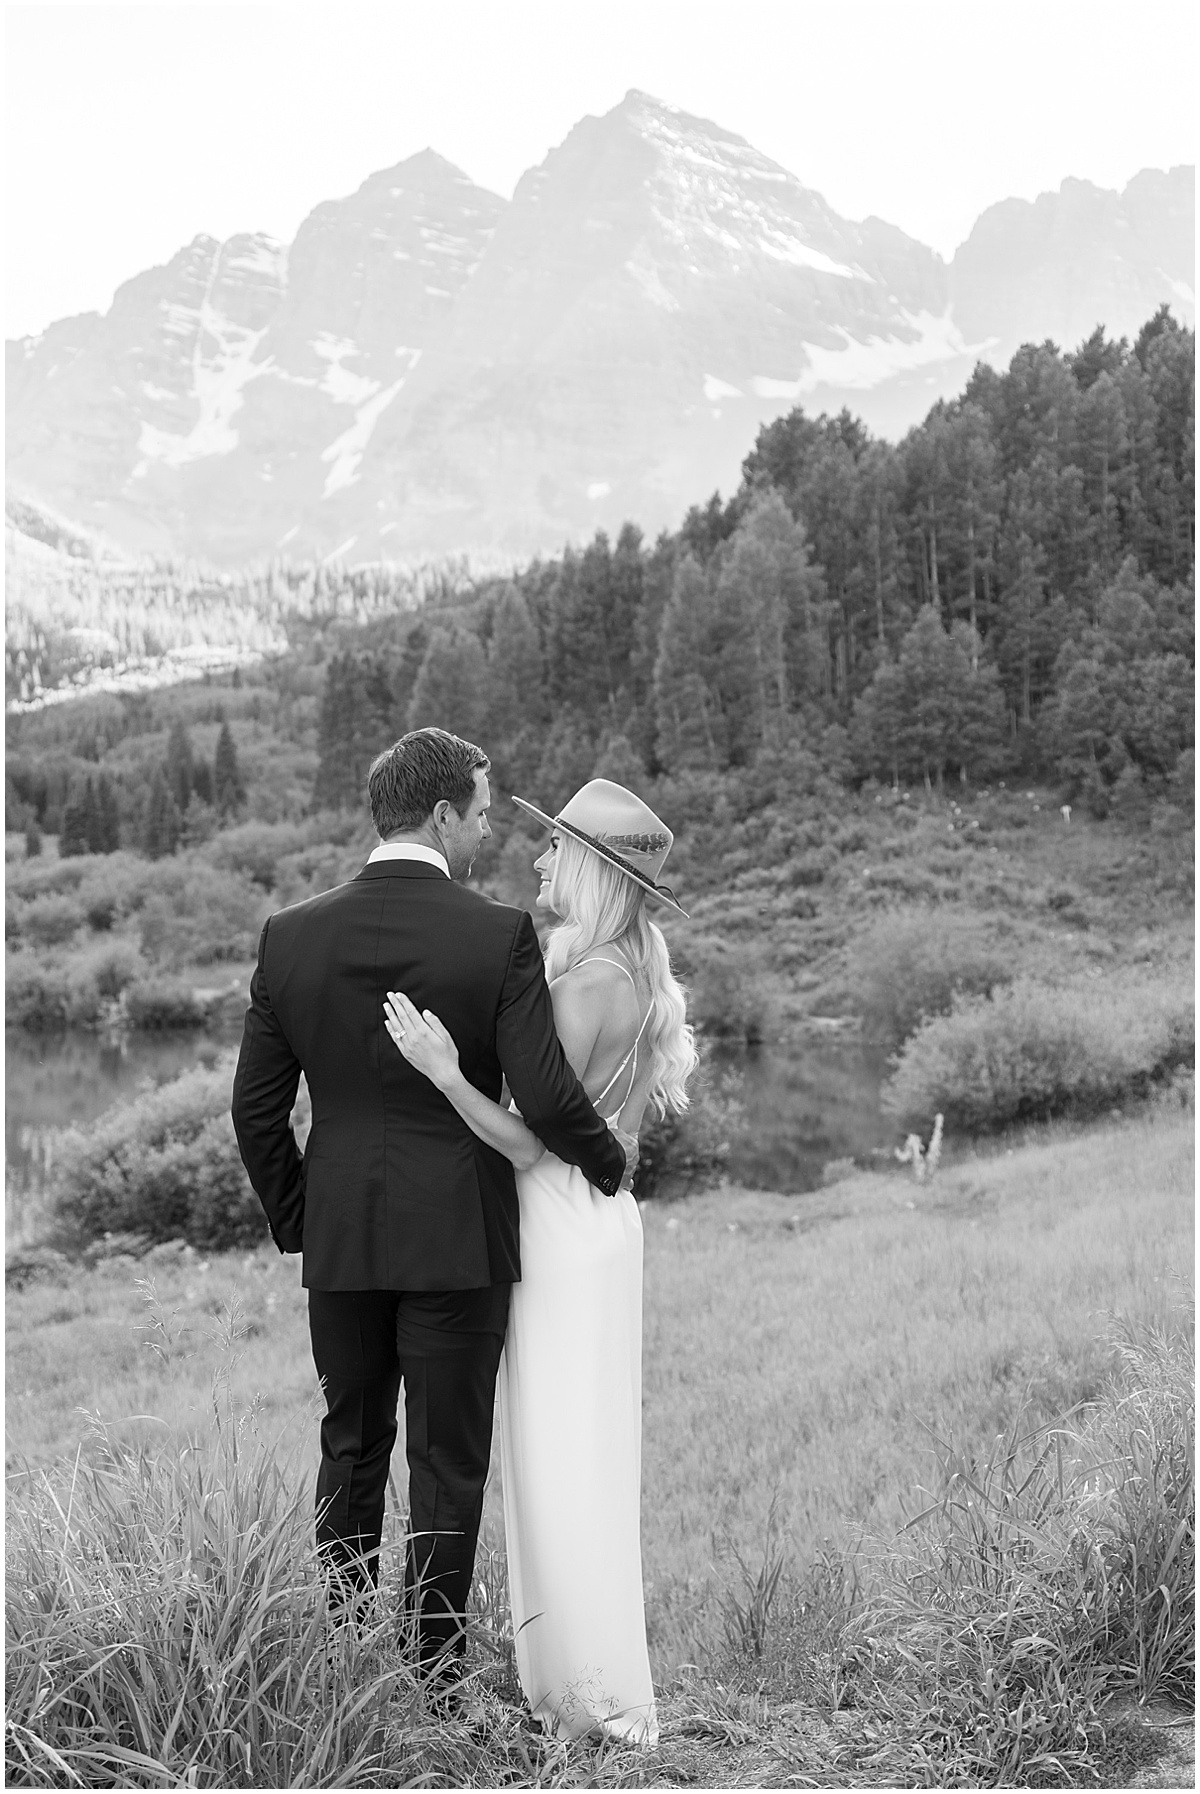 Black and White Wedding Photography Aspen Colorado © Bonnie Sen Photography